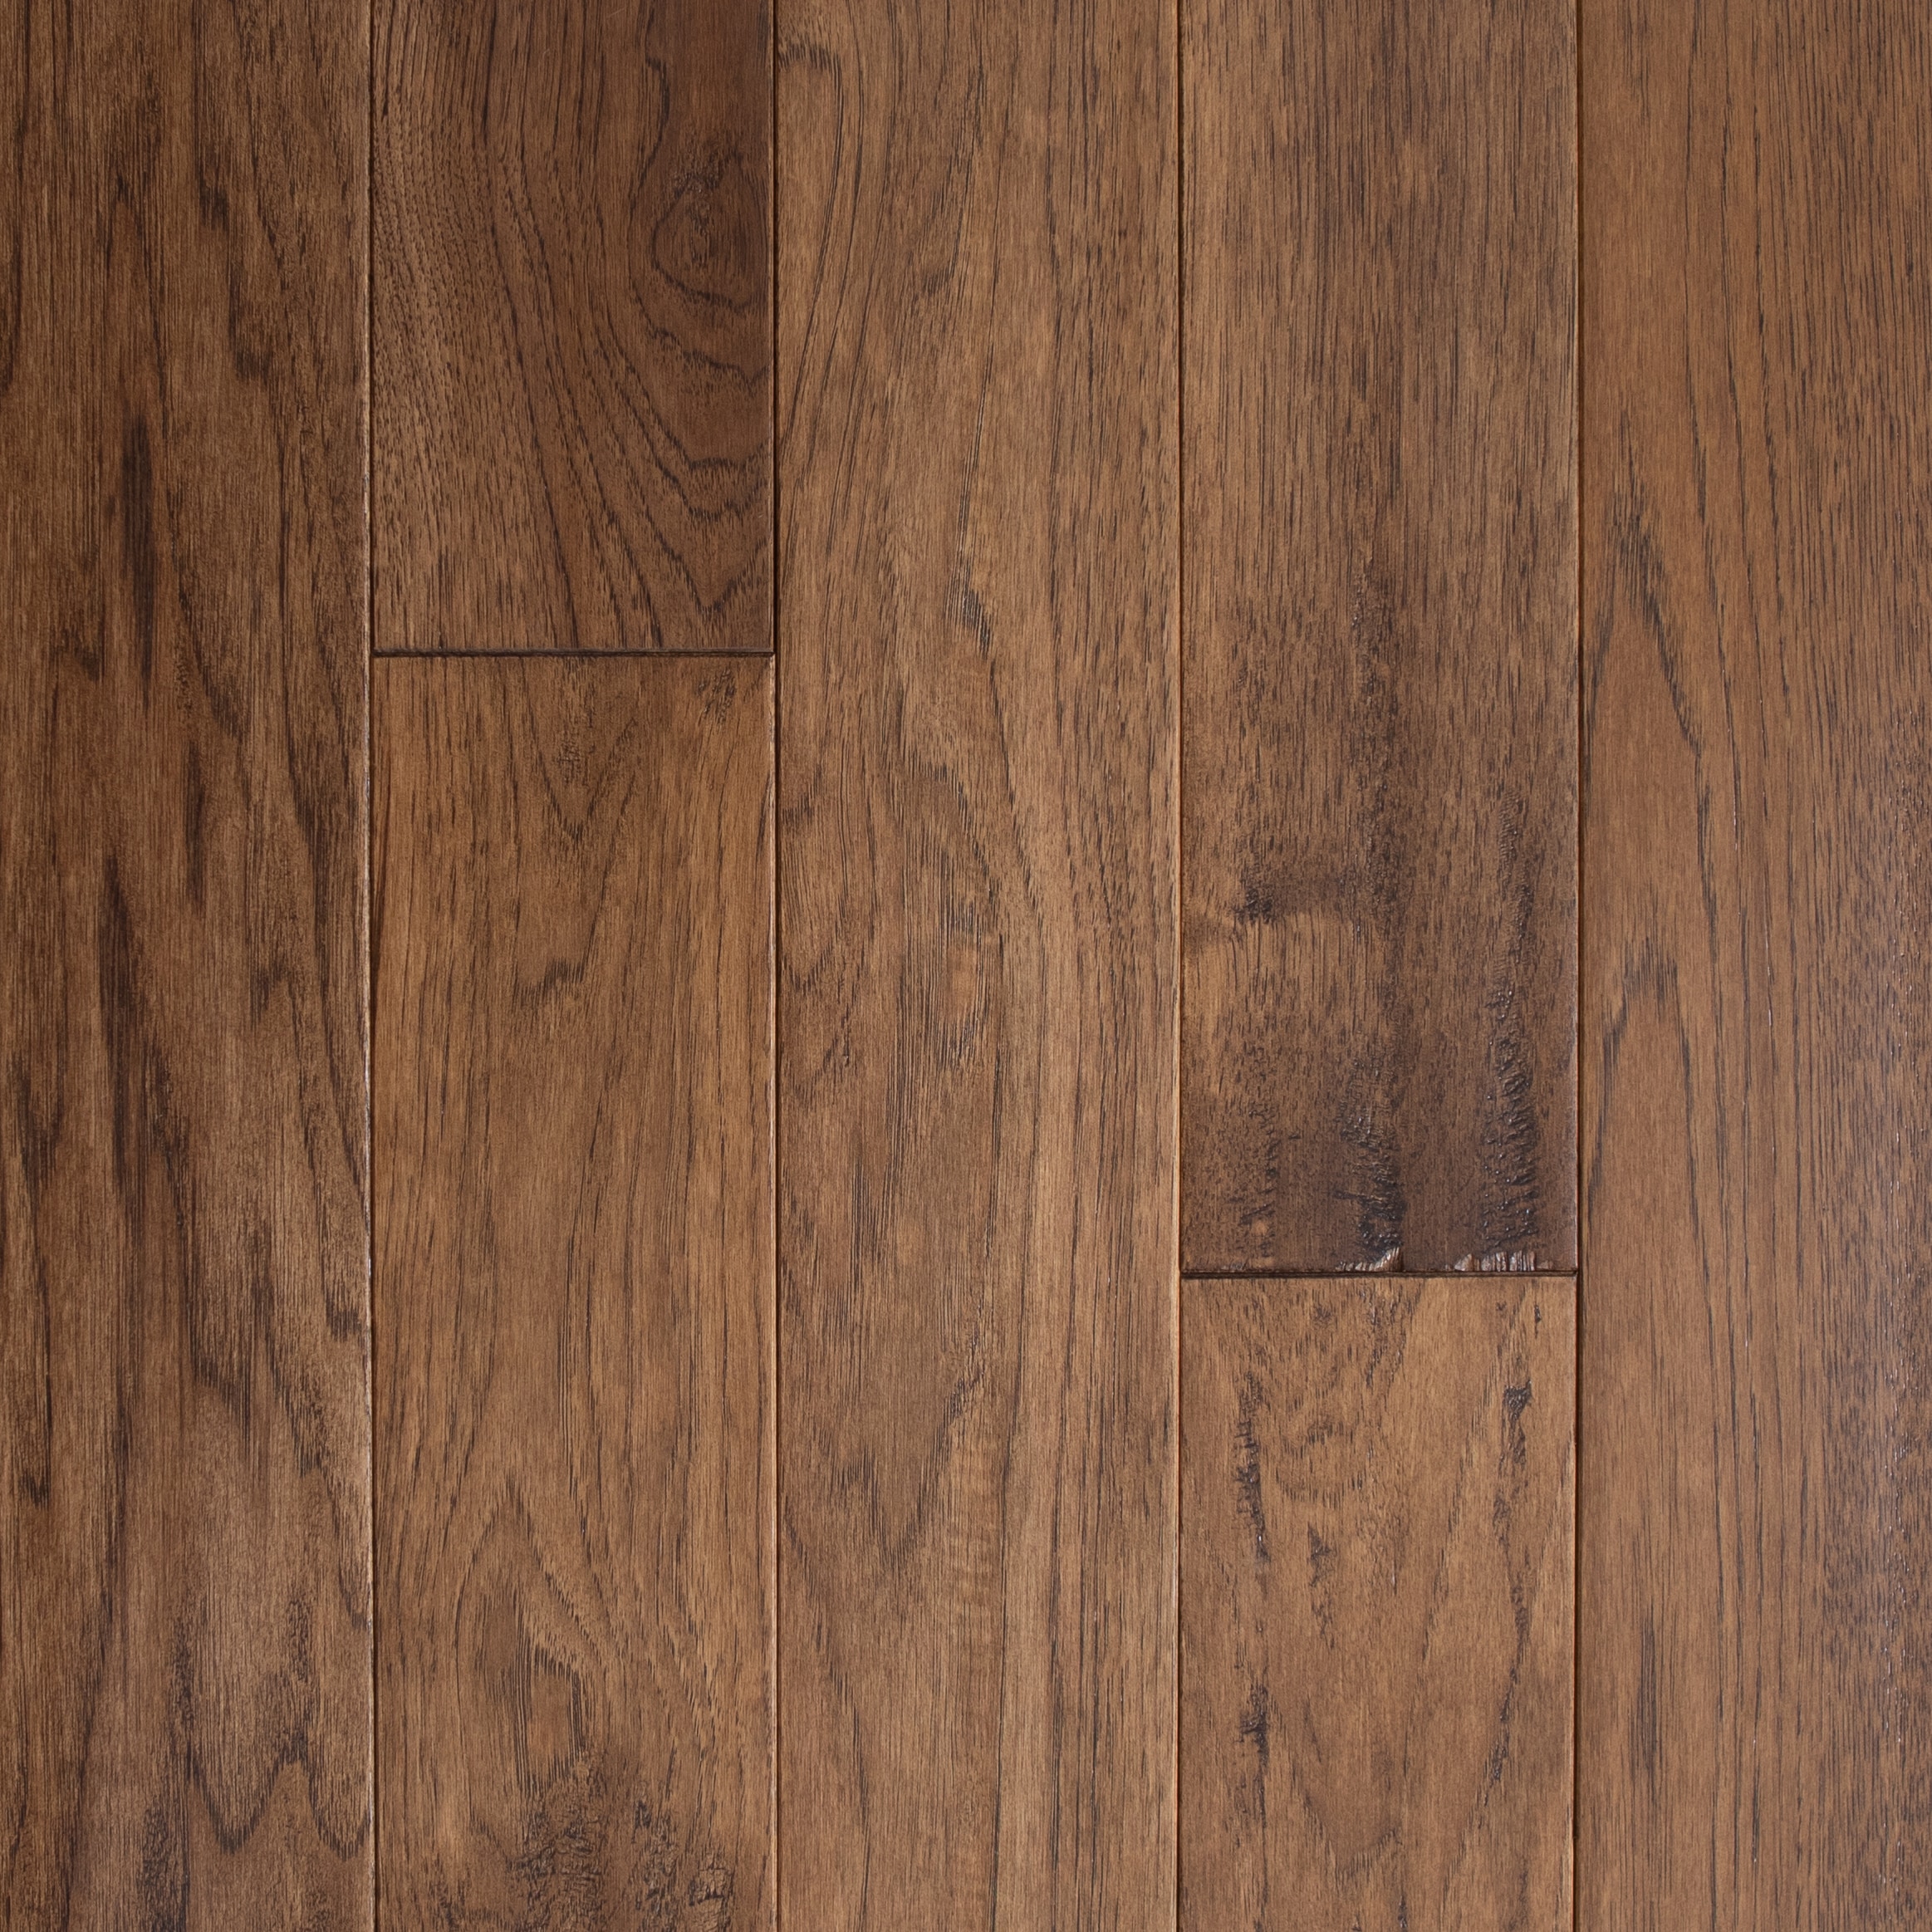 Solid Hardwood Flooring, Green Hardwood Flooring